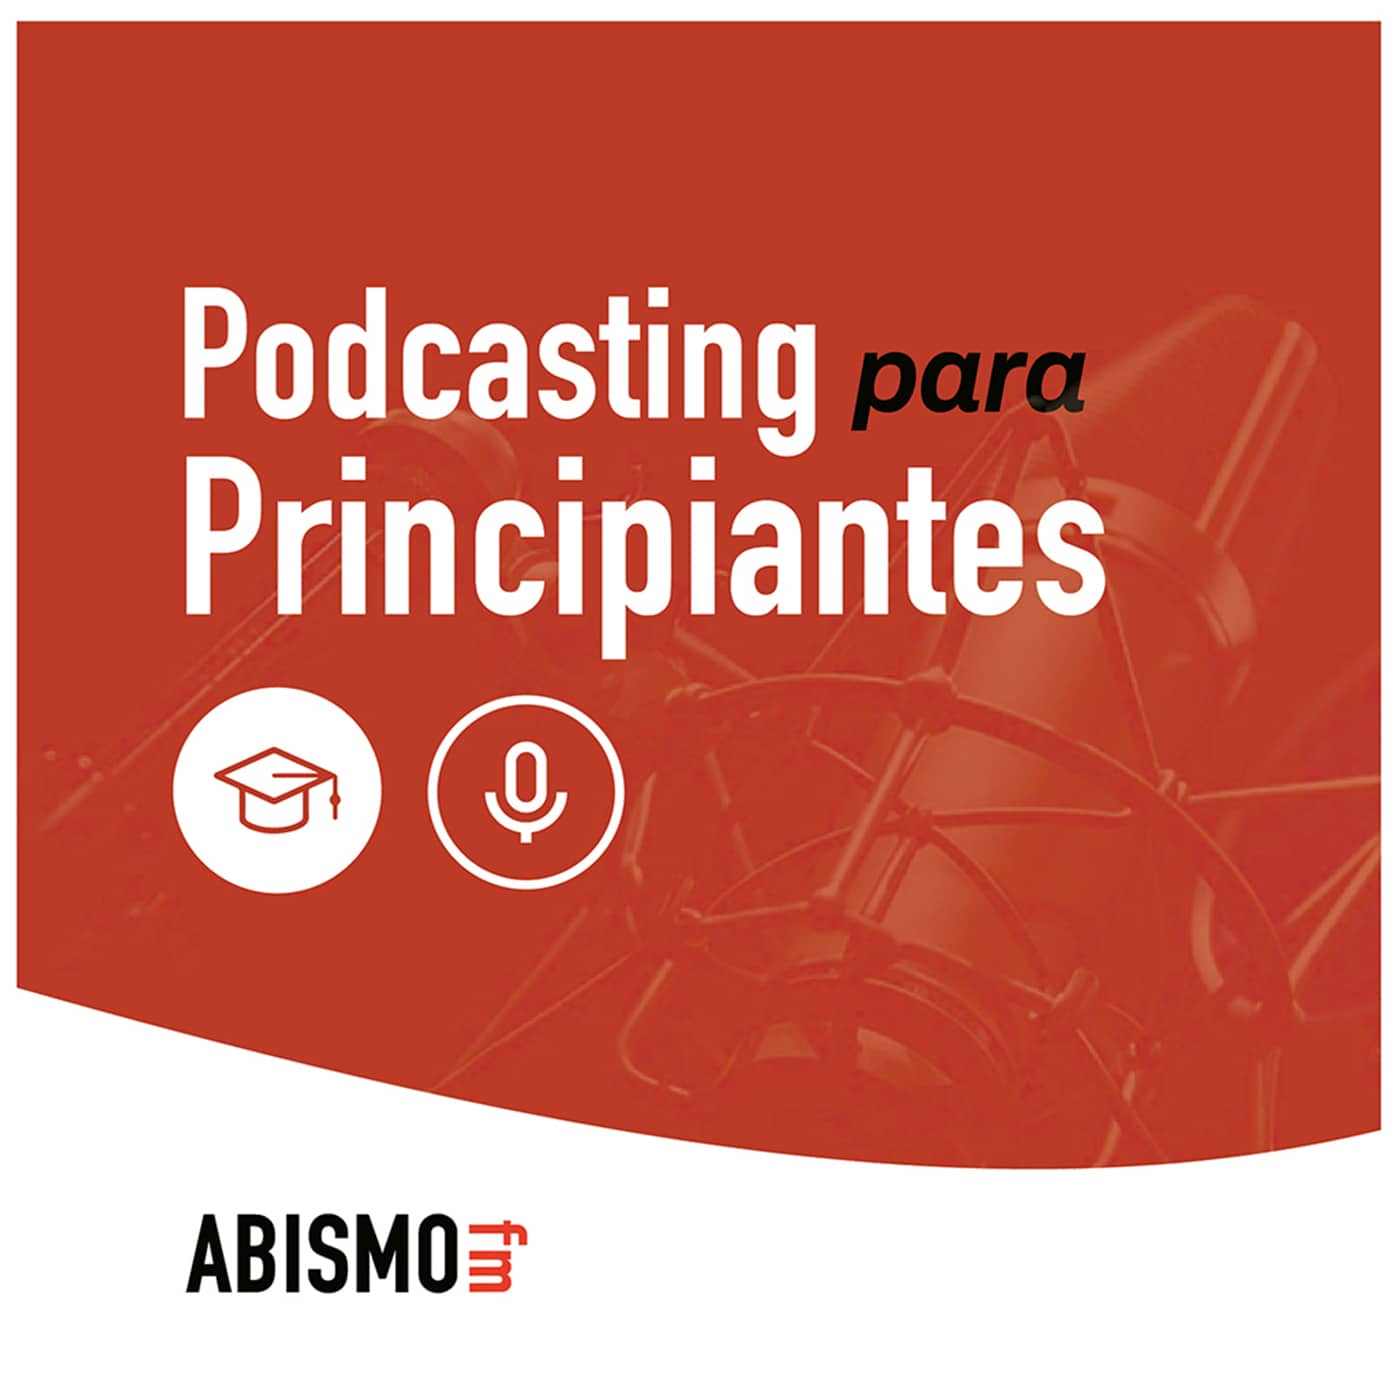 Podcasting para principiantes